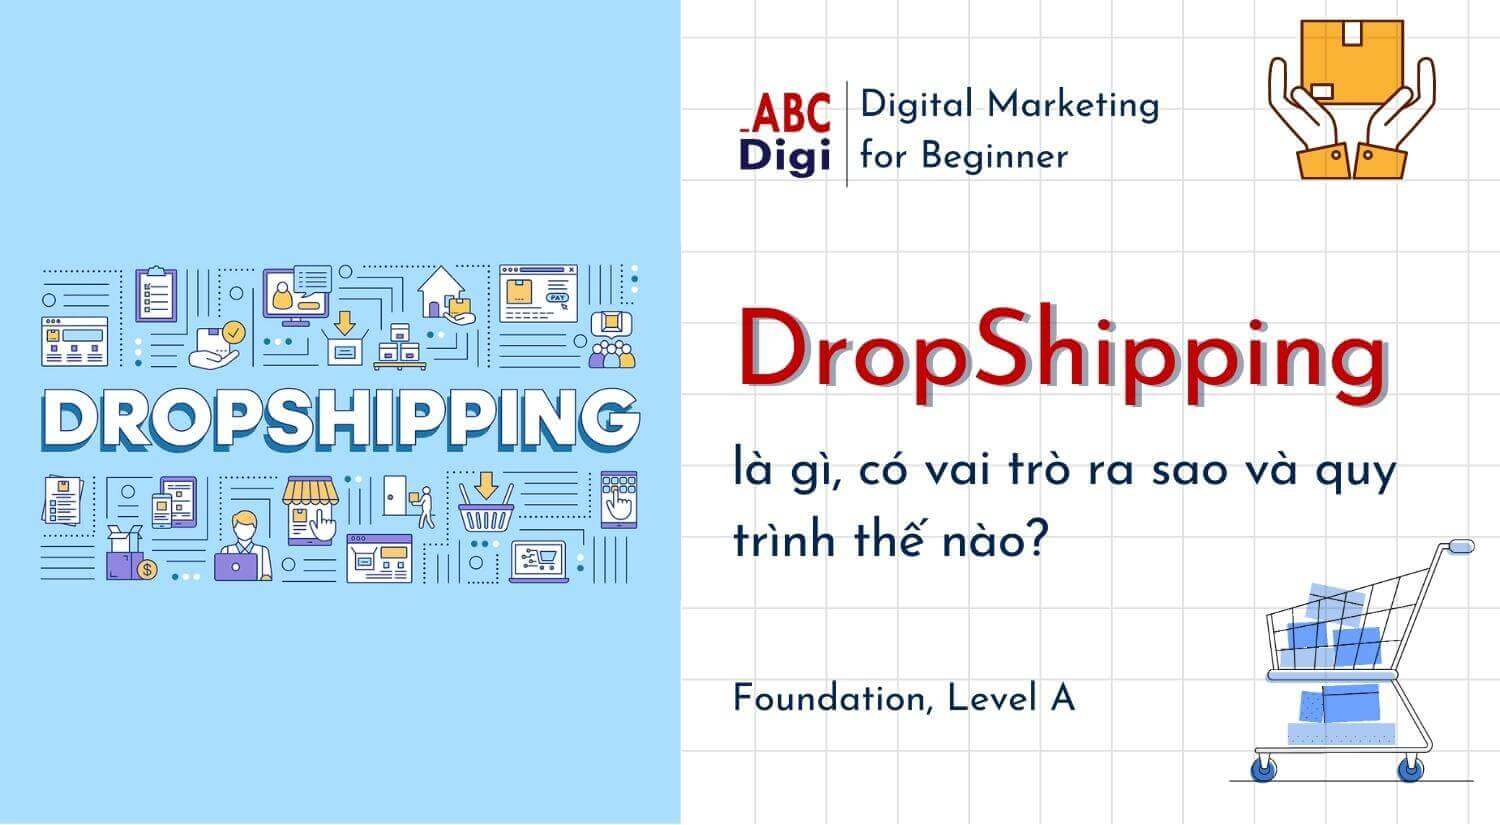 Dropshipping là gì, có vai trò ra sao và quy trình thế nào?